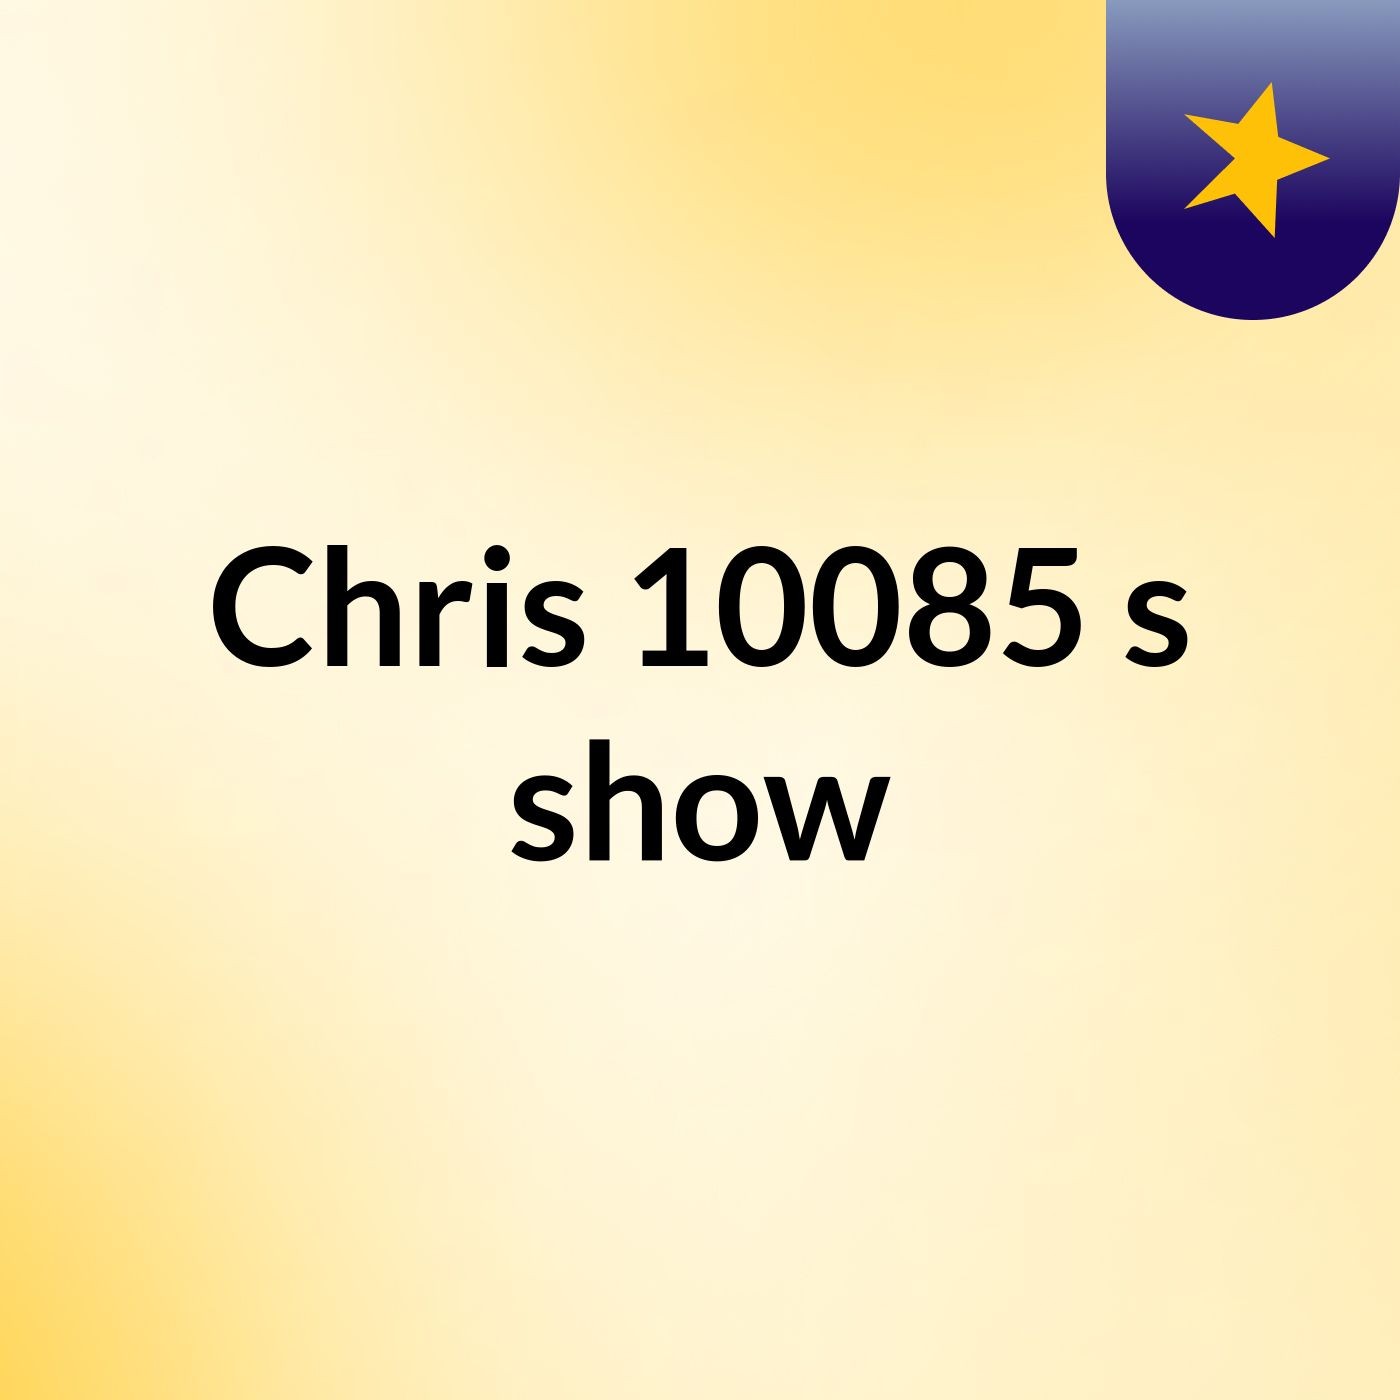 Chris 10085's show